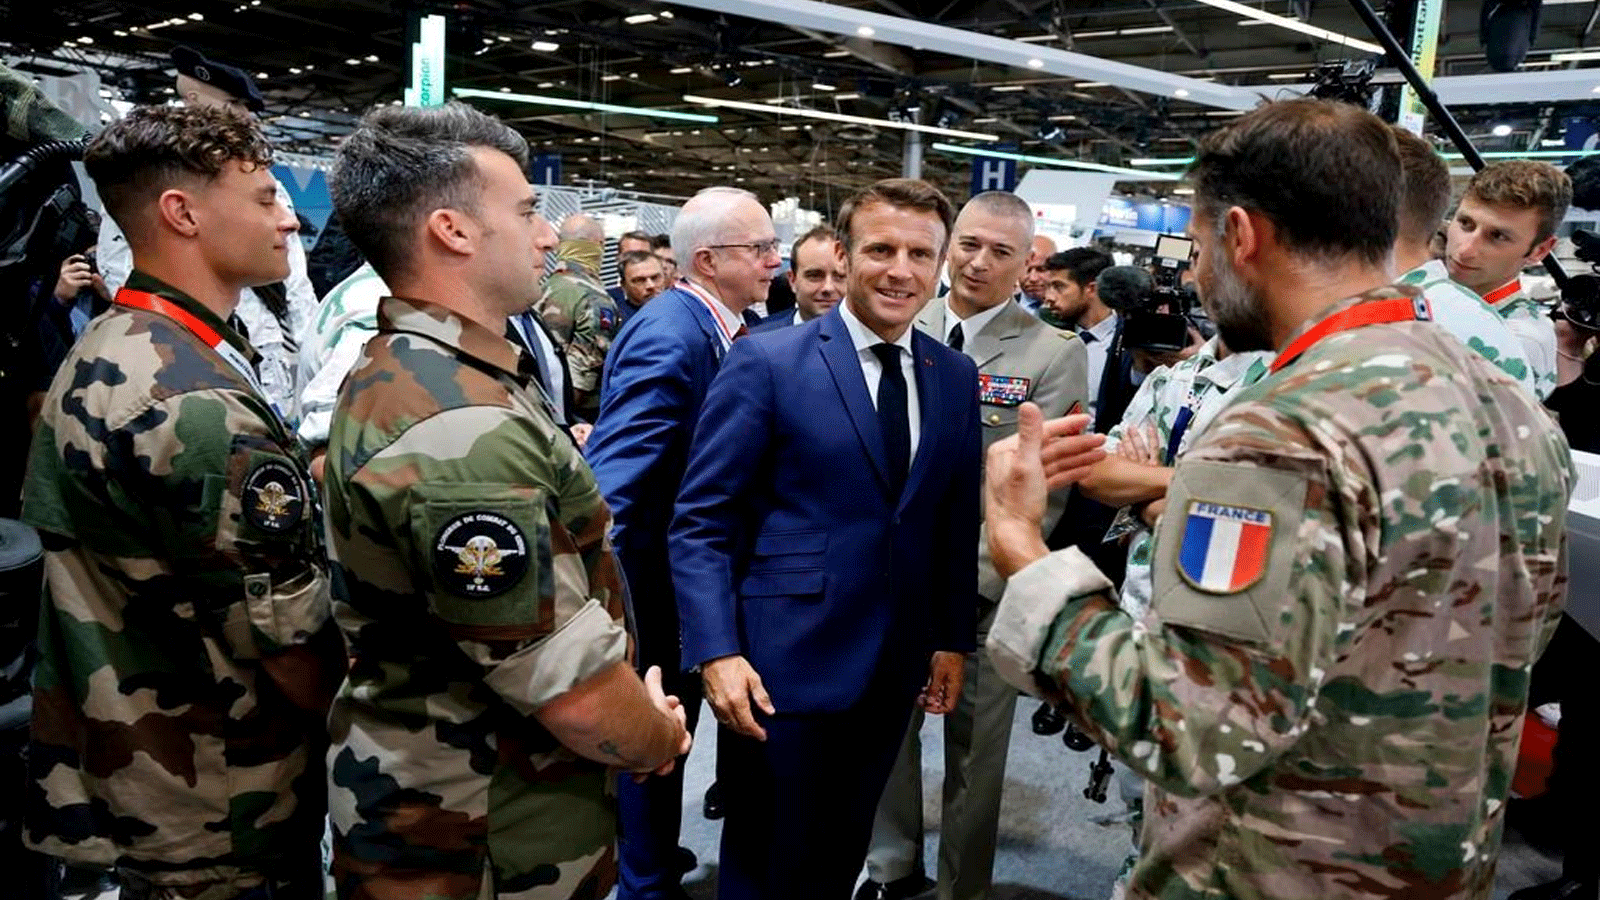 ماكرون (في الوسط) مع جنود في فيلبينت شمال باريس